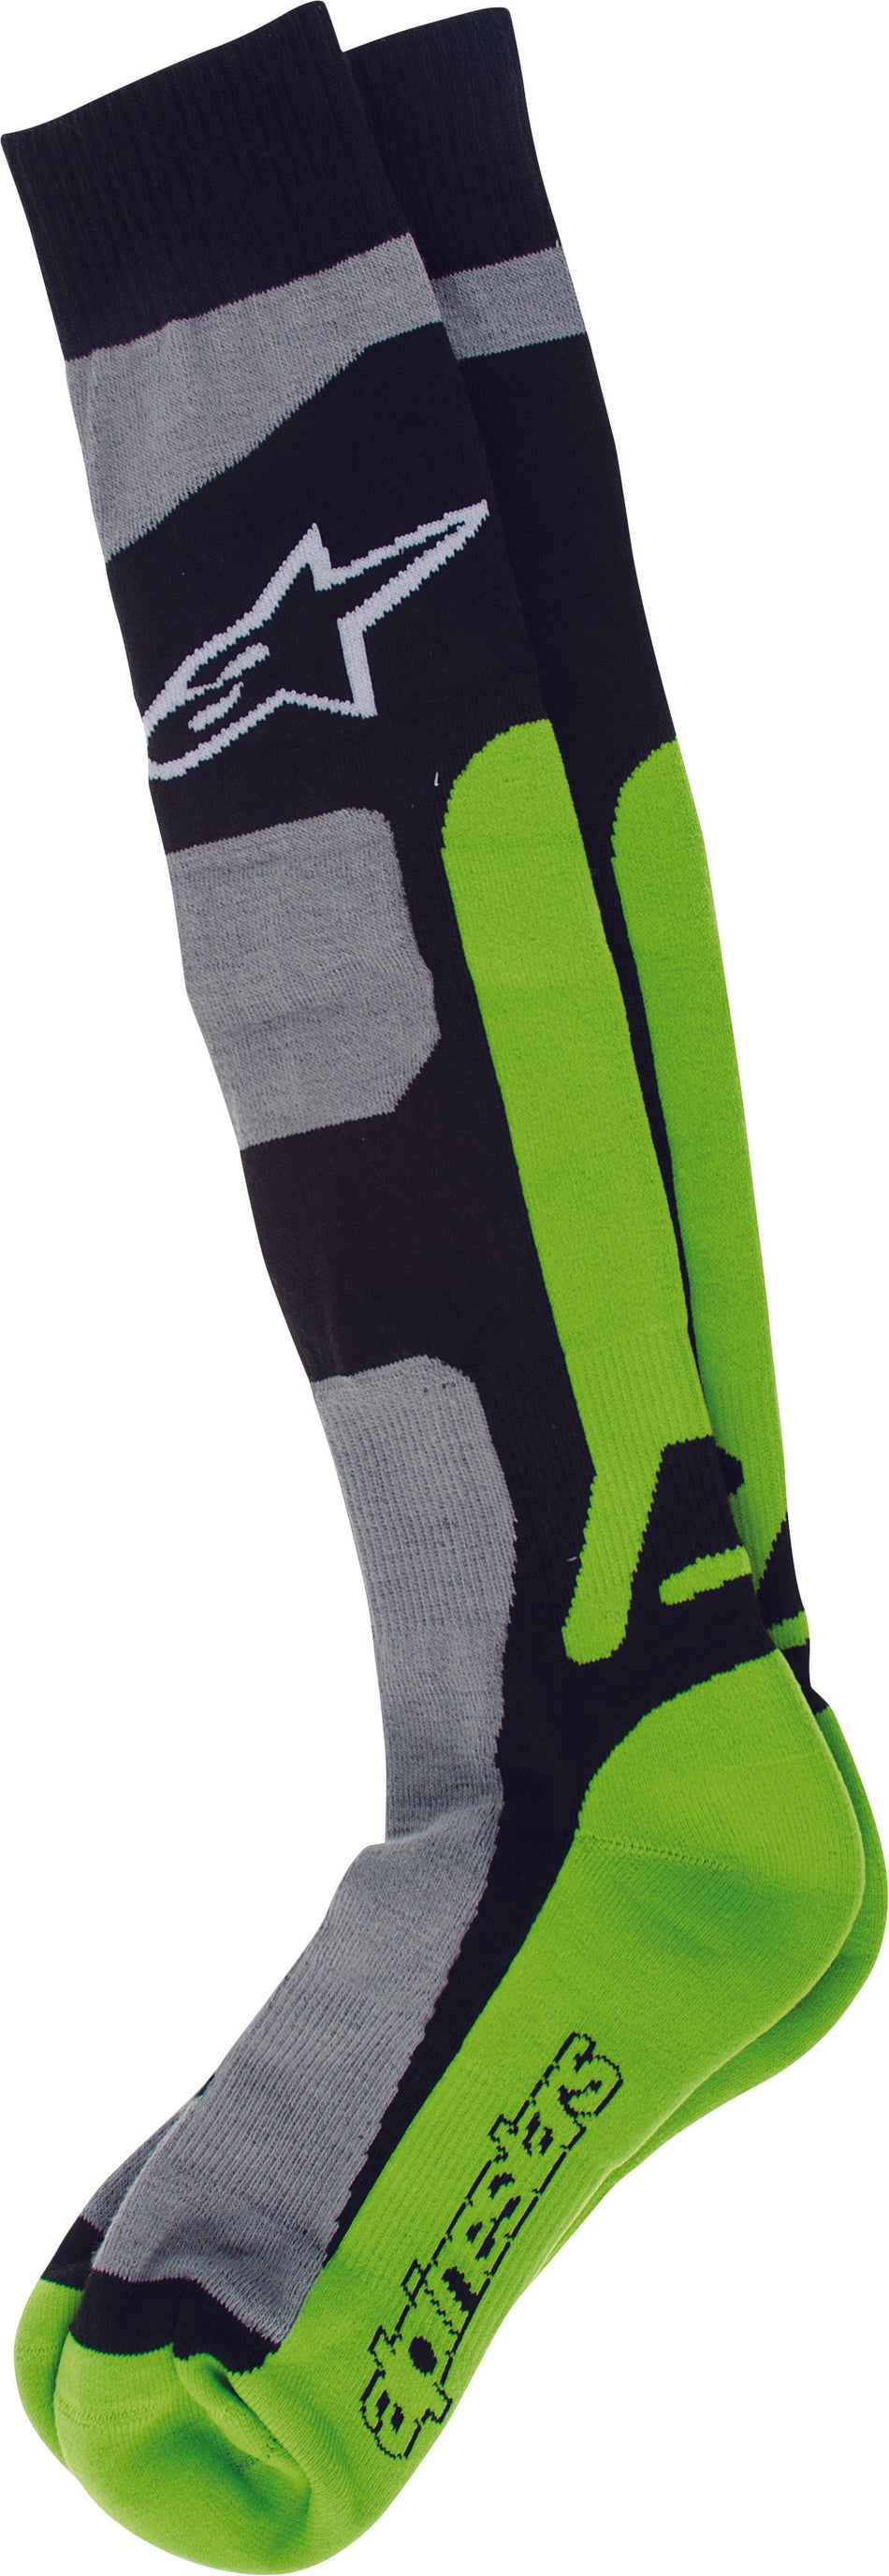 ALPINESTARS Tech Coolmax Socks Green Lg-2x 4702114-916-L/XL